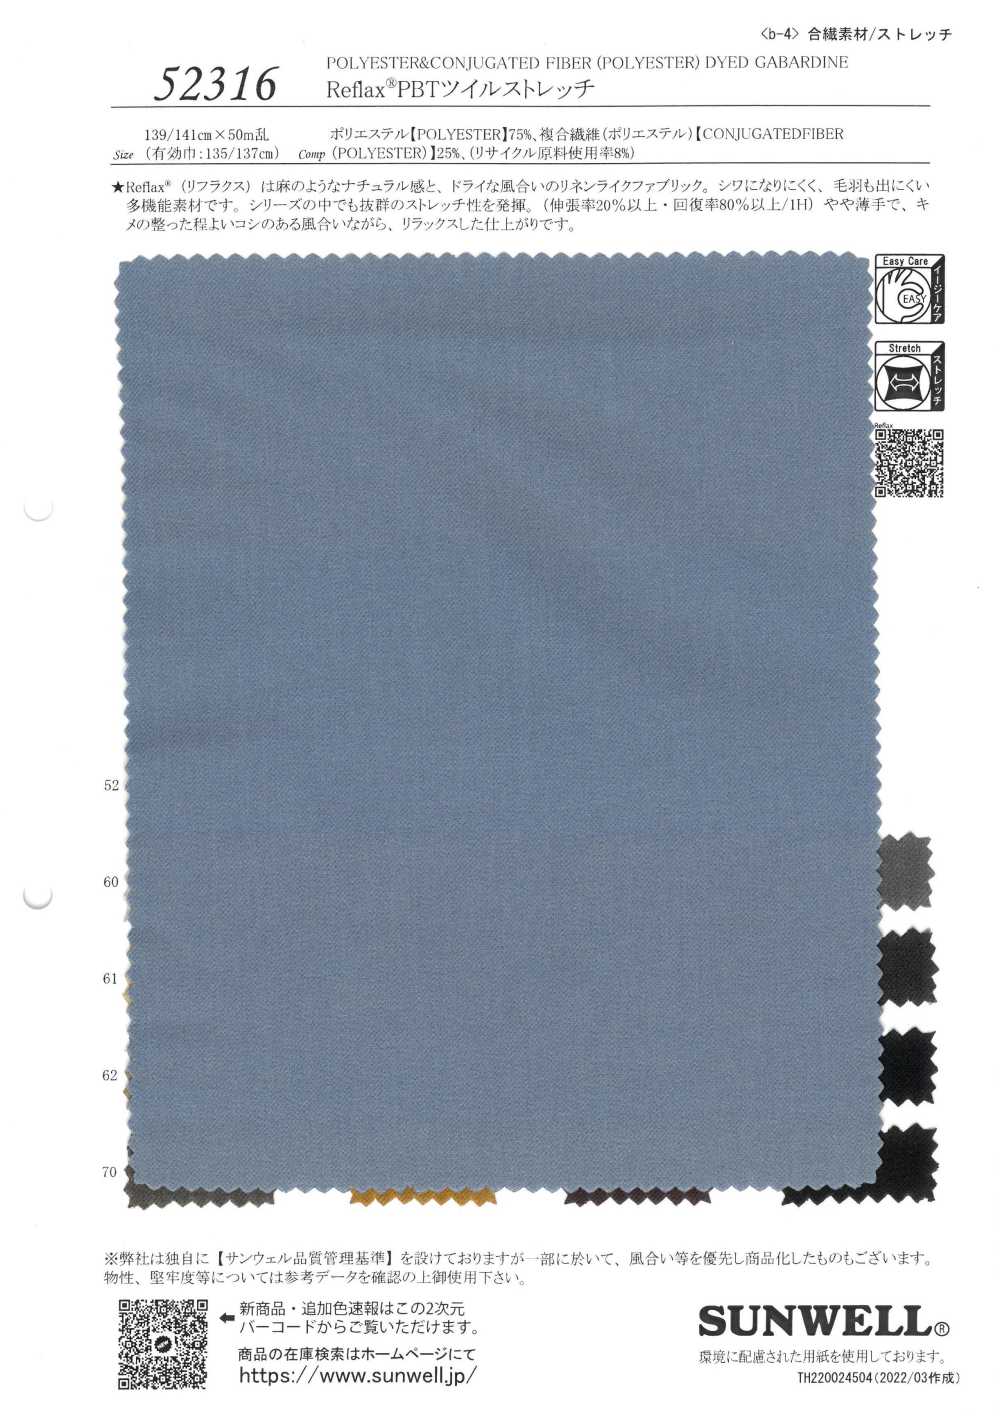 52316 Sarga Elástica Reflax® PBT[Fabrica Textil] SUNWELL